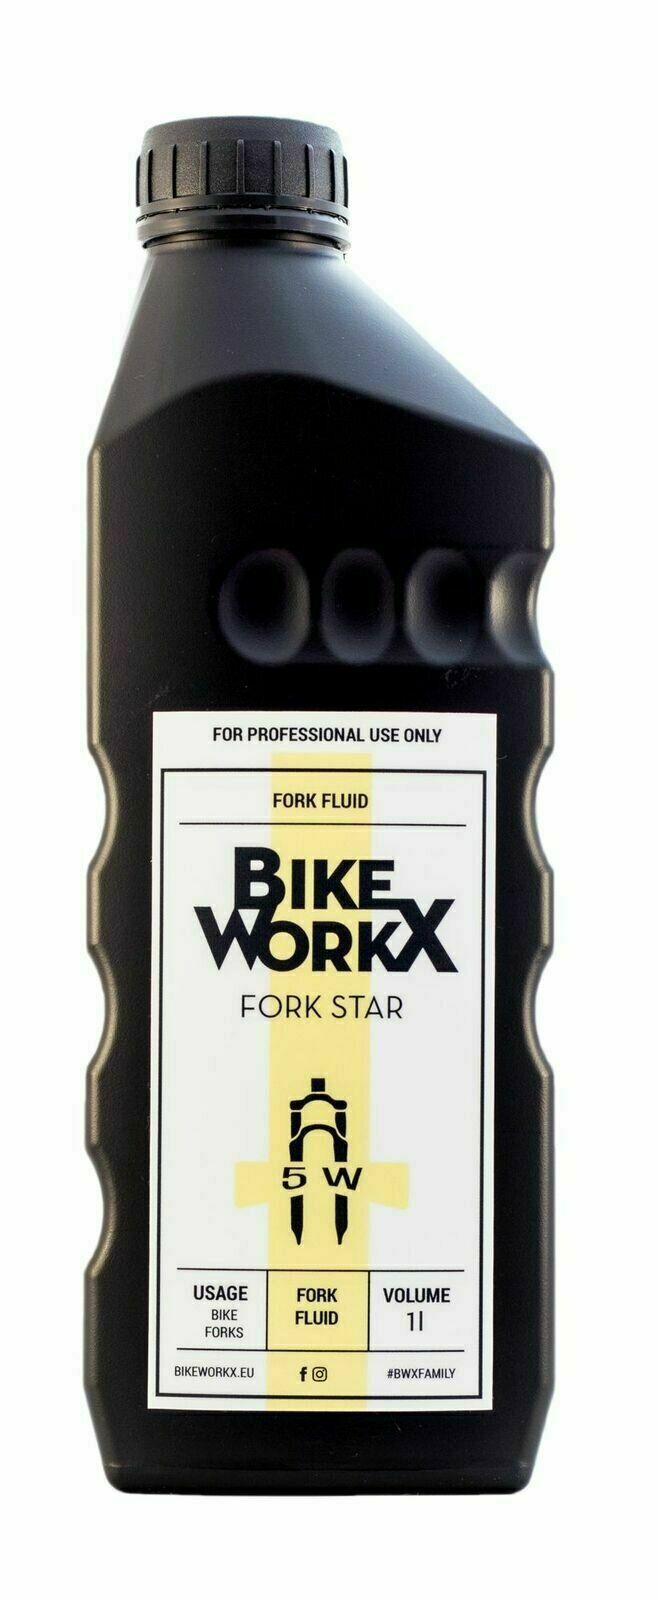 Fahrrad - Wartung und Pflege BikeWorkX Fork Star 5W 1 L Fahrrad - Wartung und Pflege